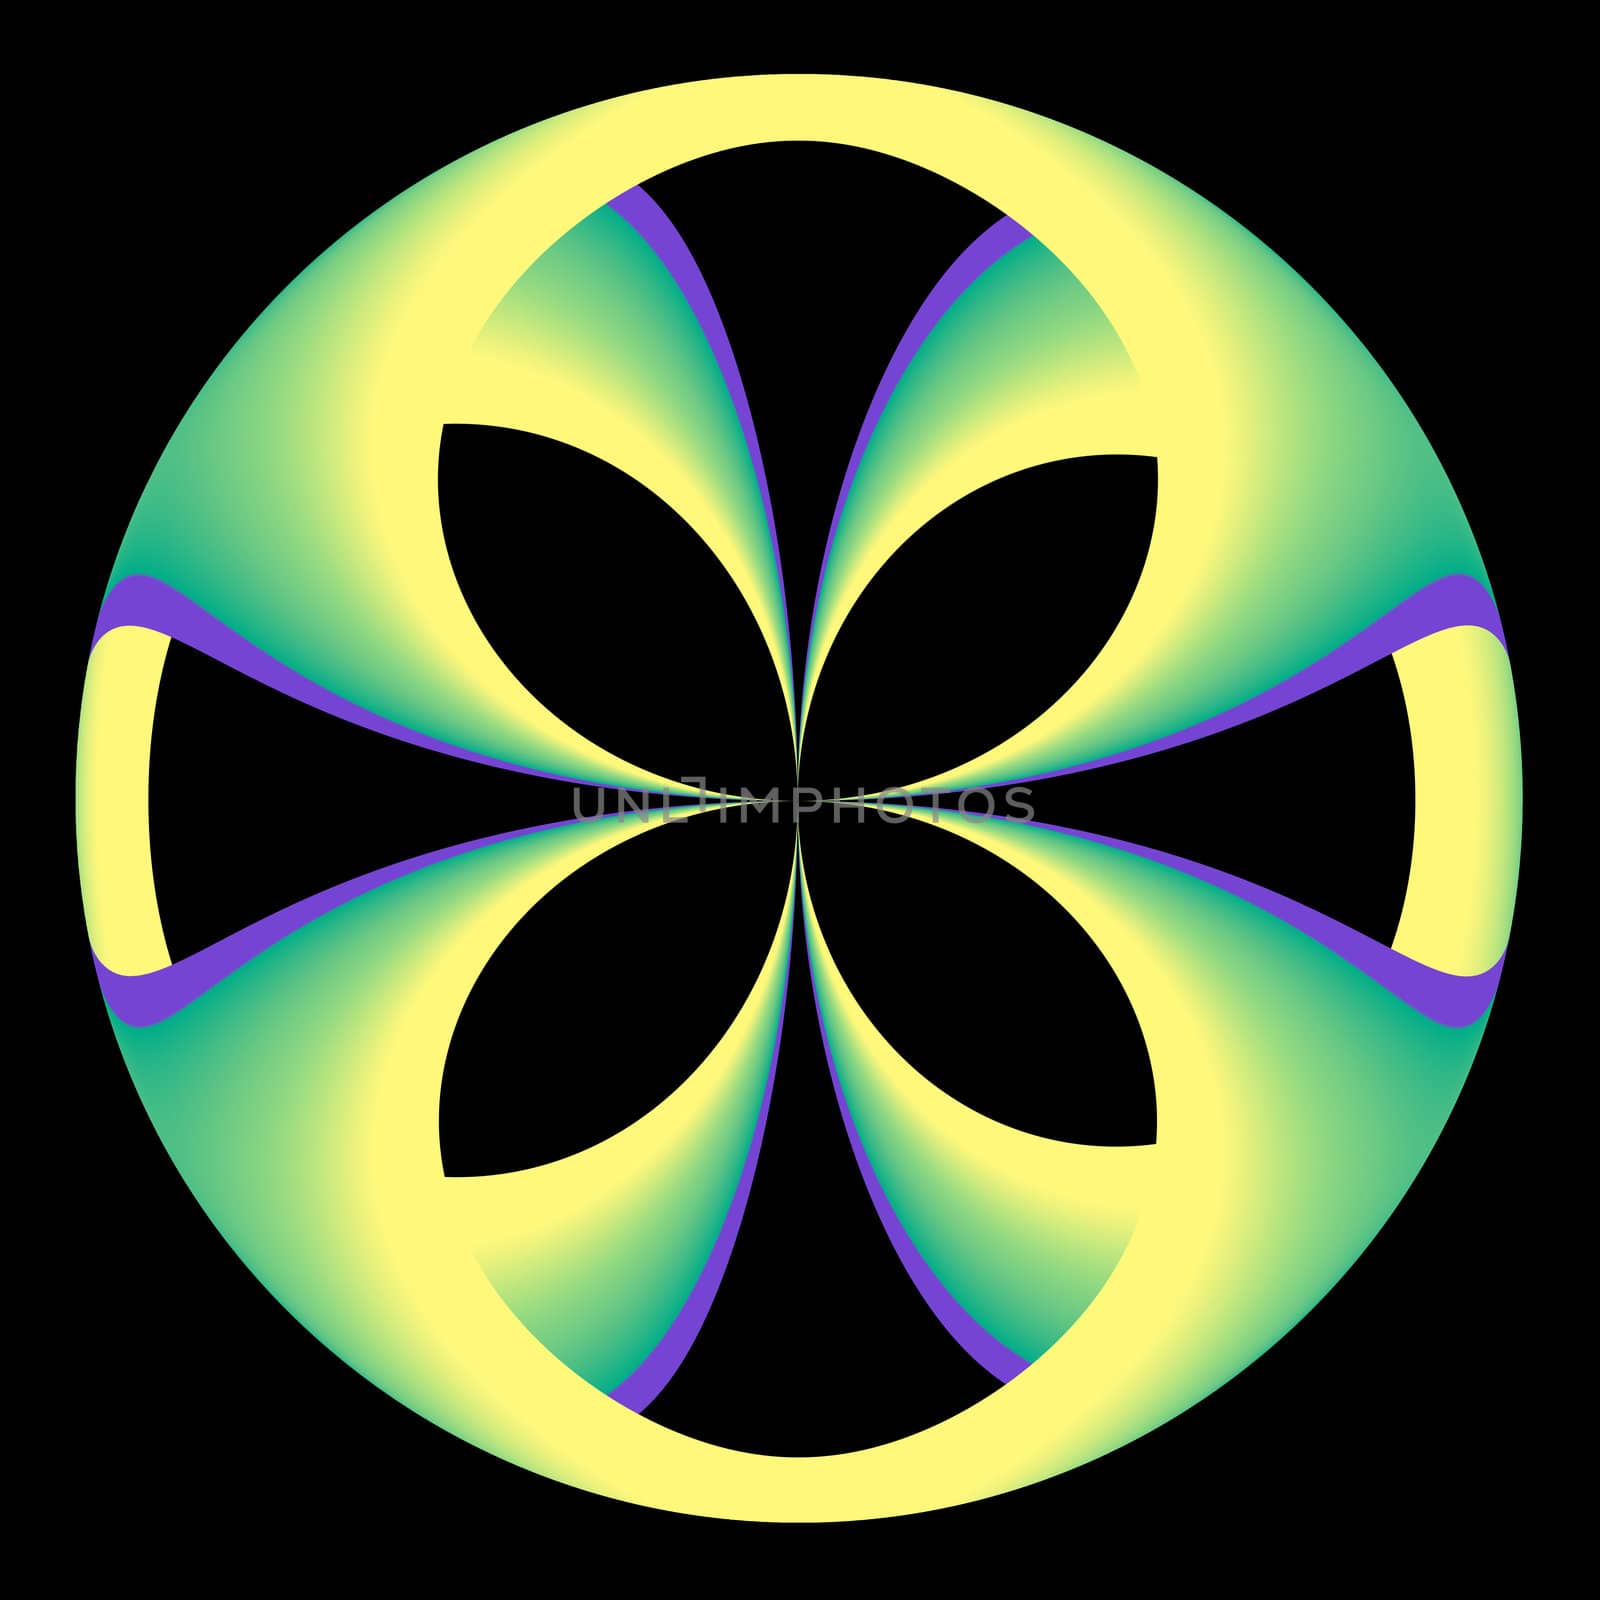 Green and Yellow Circular Abstract by patballard